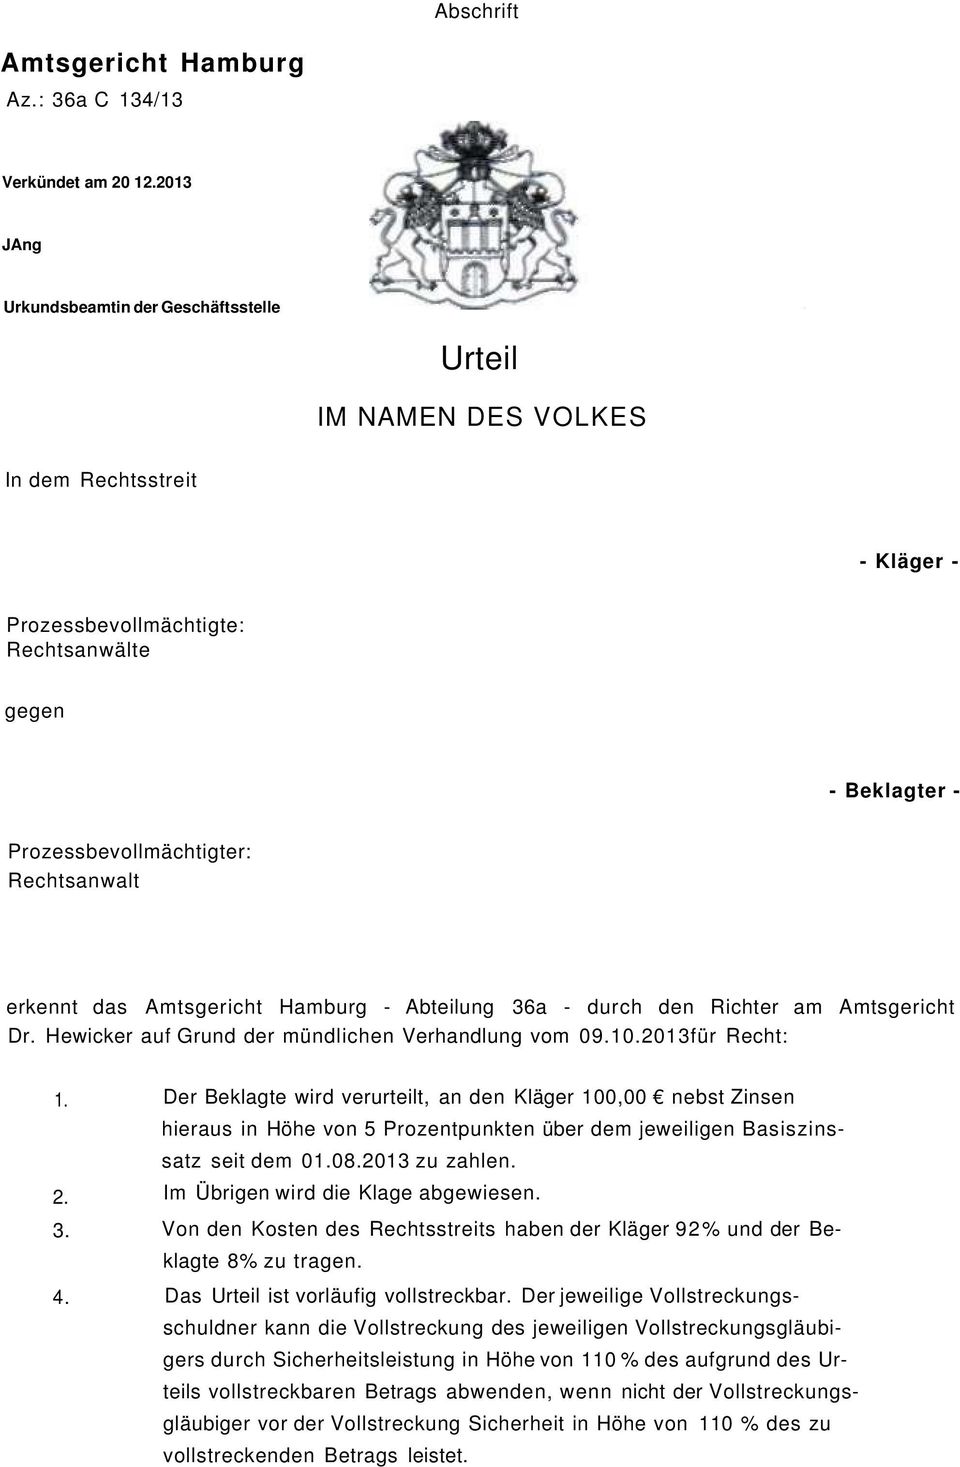 erkennt das Amtsgericht Hamburg - Abteilung 36a - durch den Richter am Amtsgericht Dr. Hewicker auf Grund der mündlichen Verhandlung vom 09.10.2013für Recht: 1. 2. 3. 4.